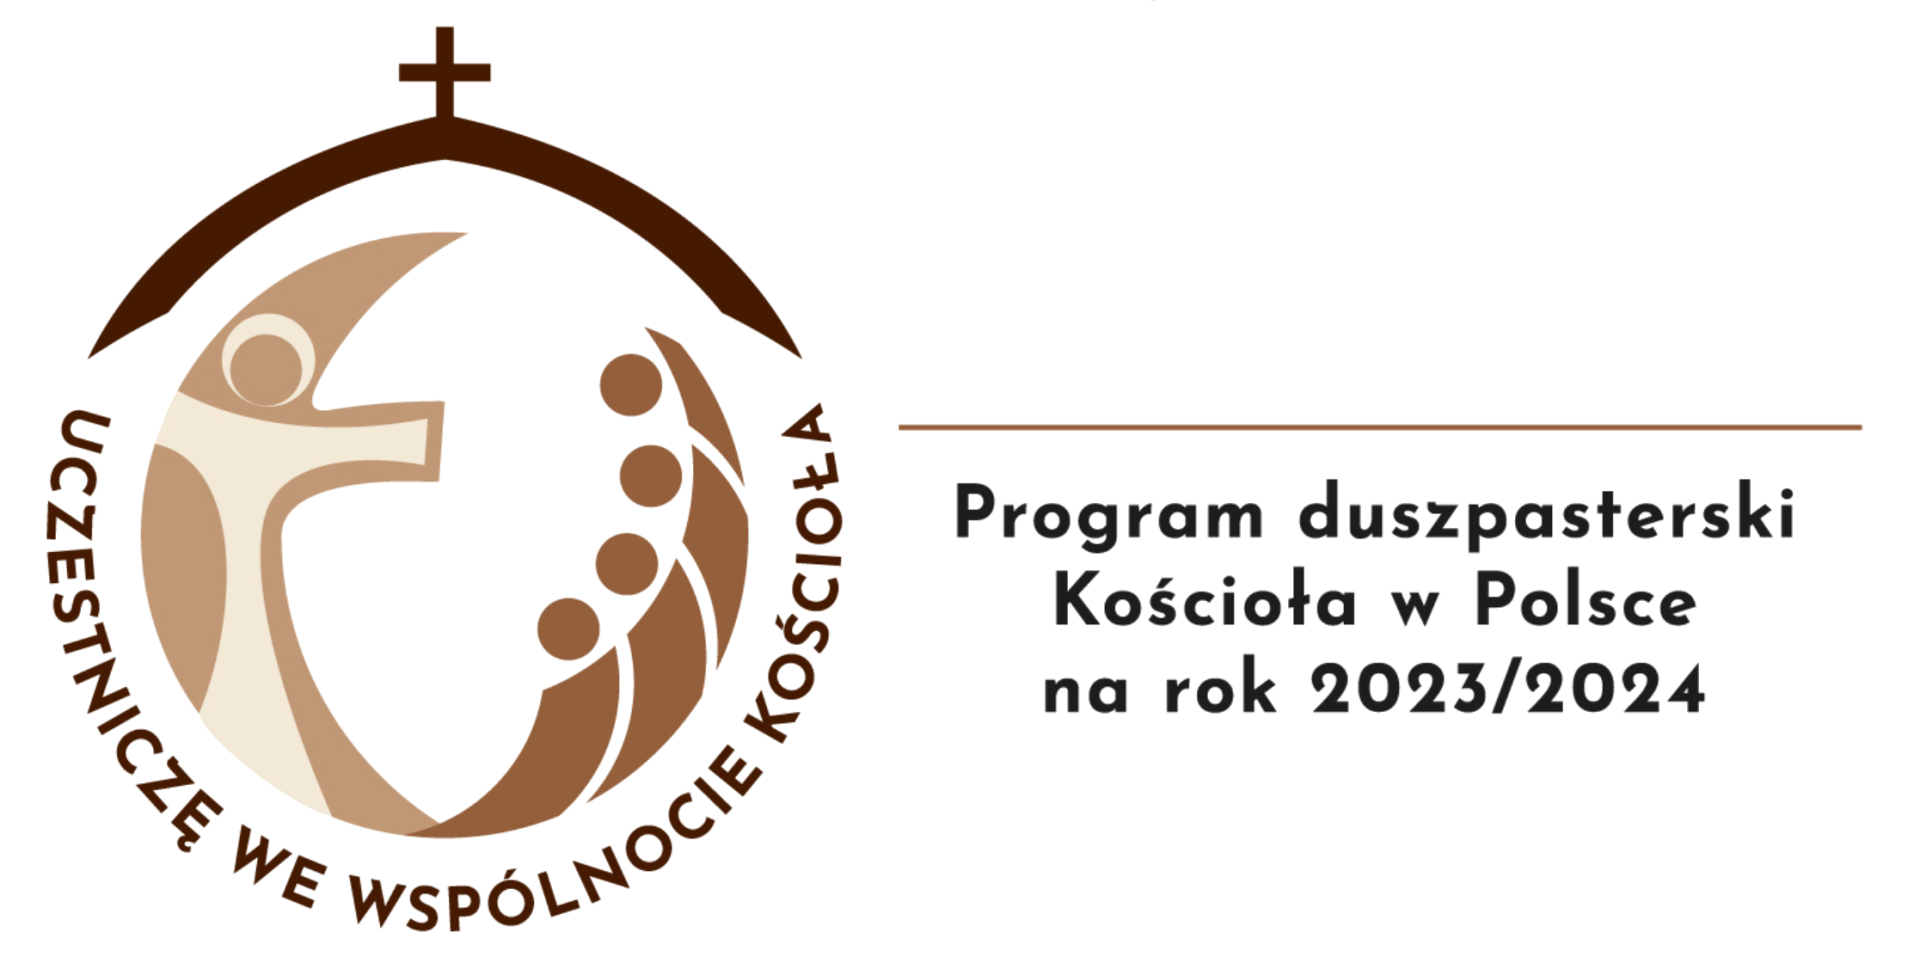 Logo Roku duszoasterskiego 